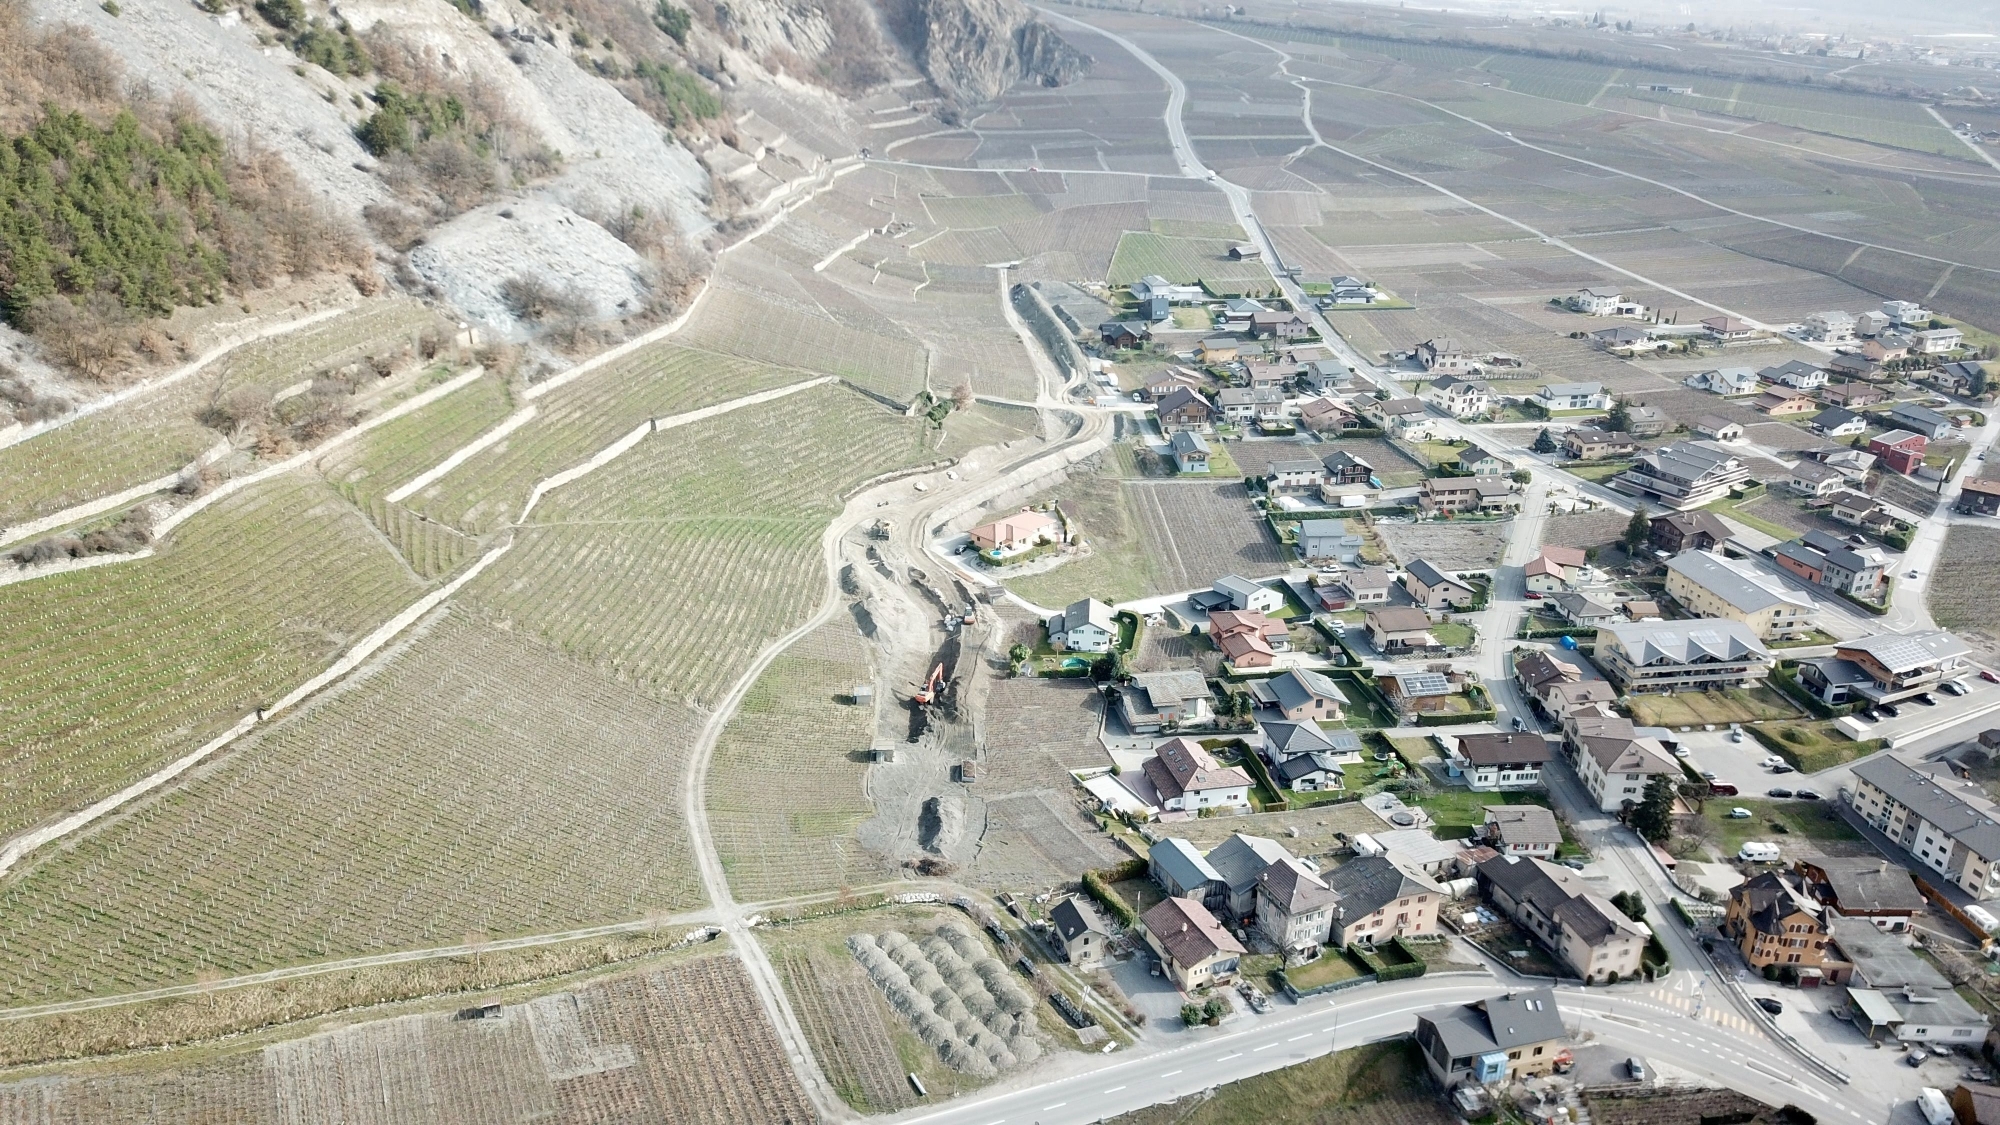 En cours de réalisation, la digue de protection borde la zone à bâtir de la partie supérieure du village de Leytron.